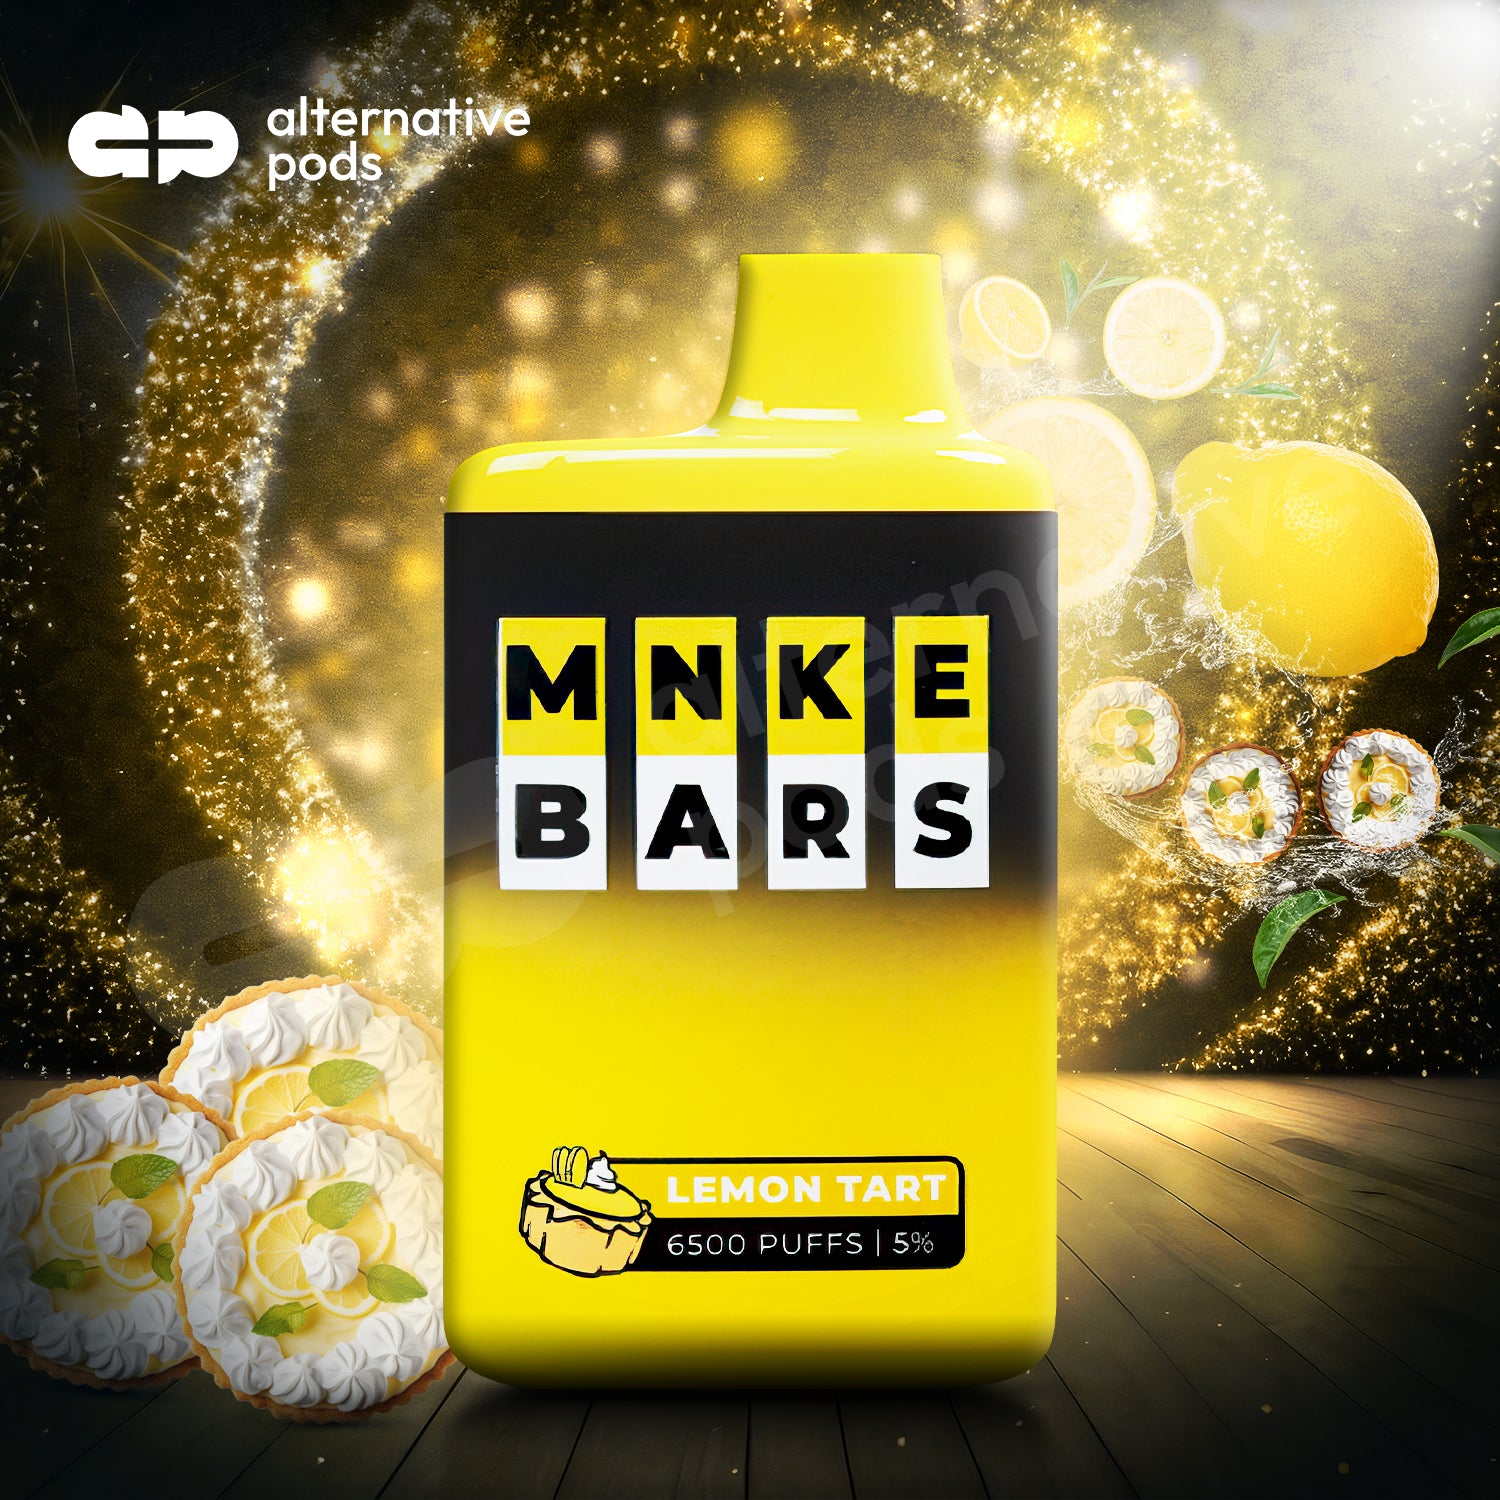 MNKE BARS 6500 DISPOSABLE - Lemon Tart